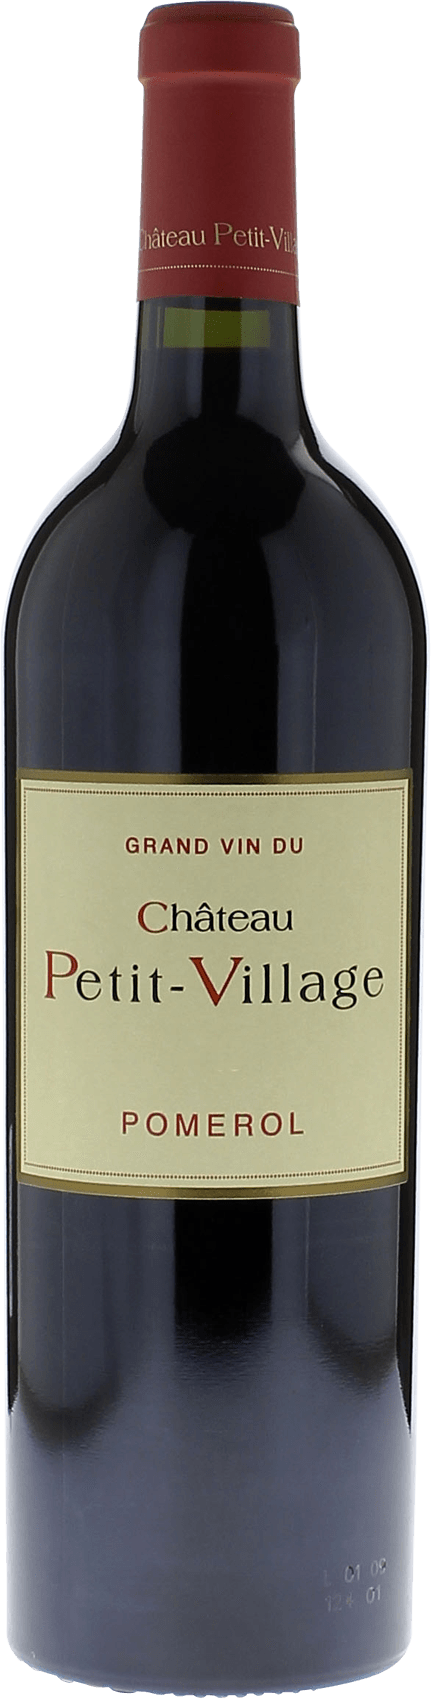 Petit village 2015  Pomerol, Bordeaux rouge